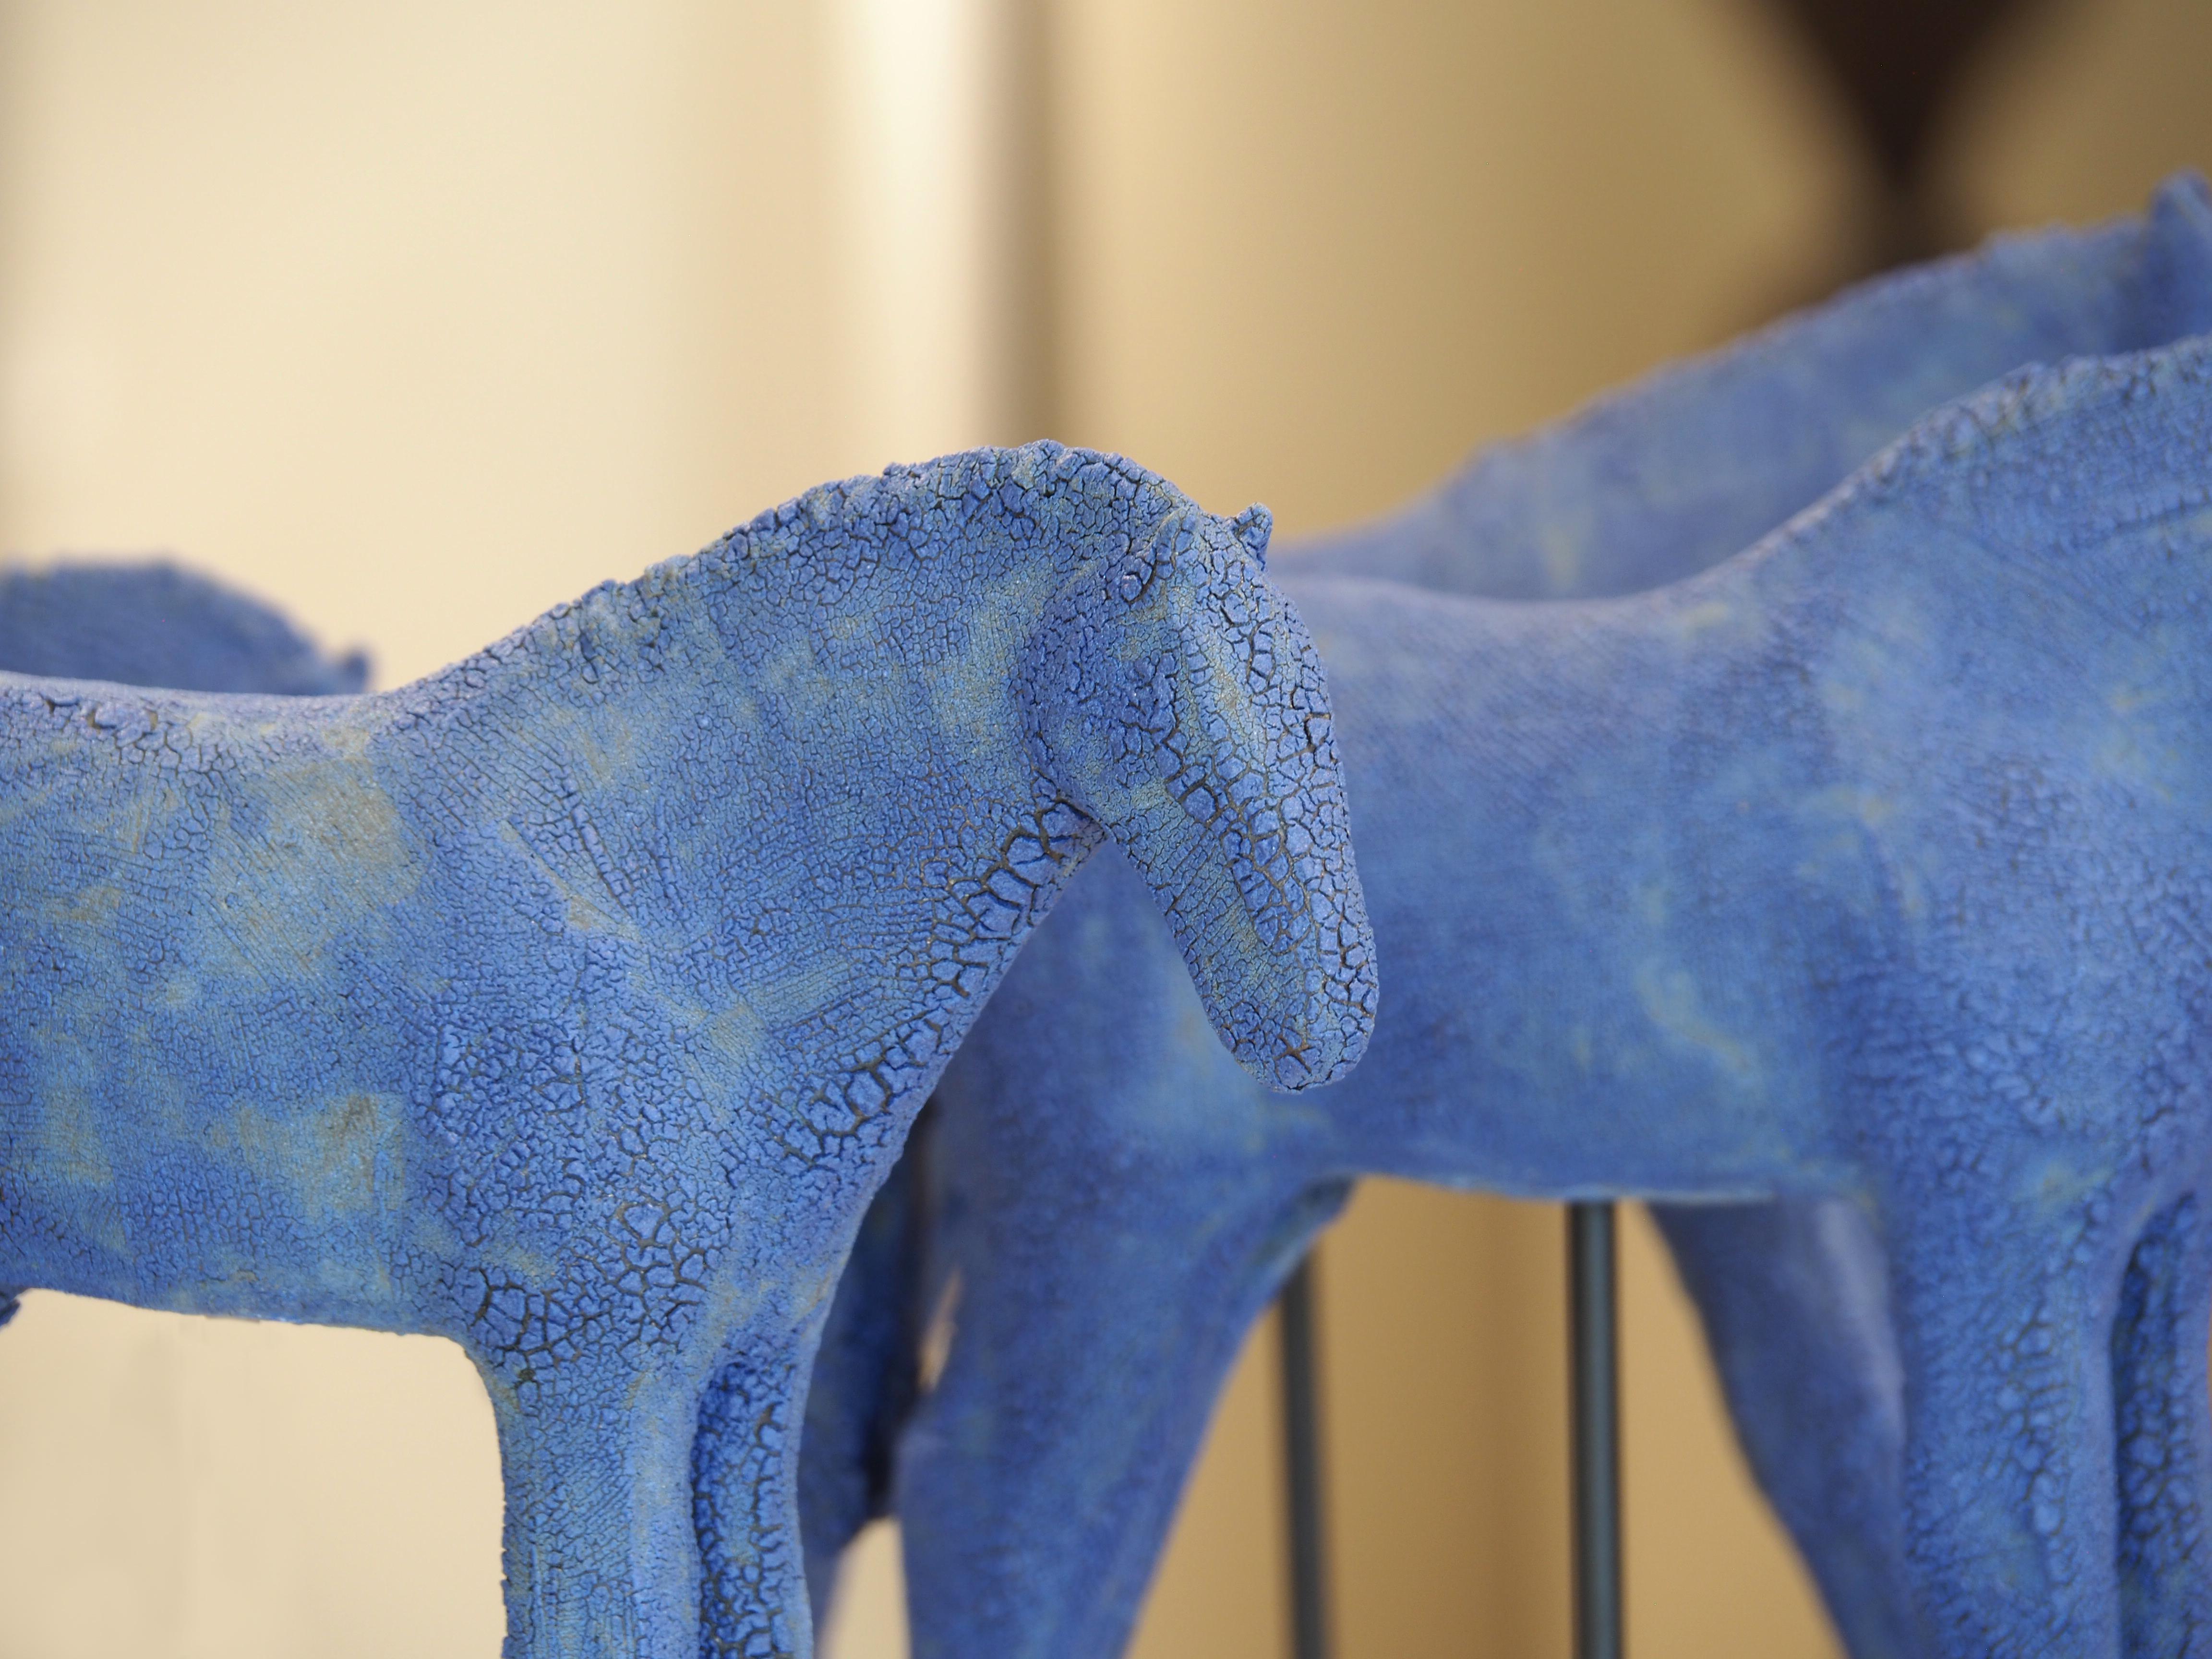 Blue Mud Herd (set of 6) (ceramic, sculpture, horses, crackle glaze, color) For Sale 1